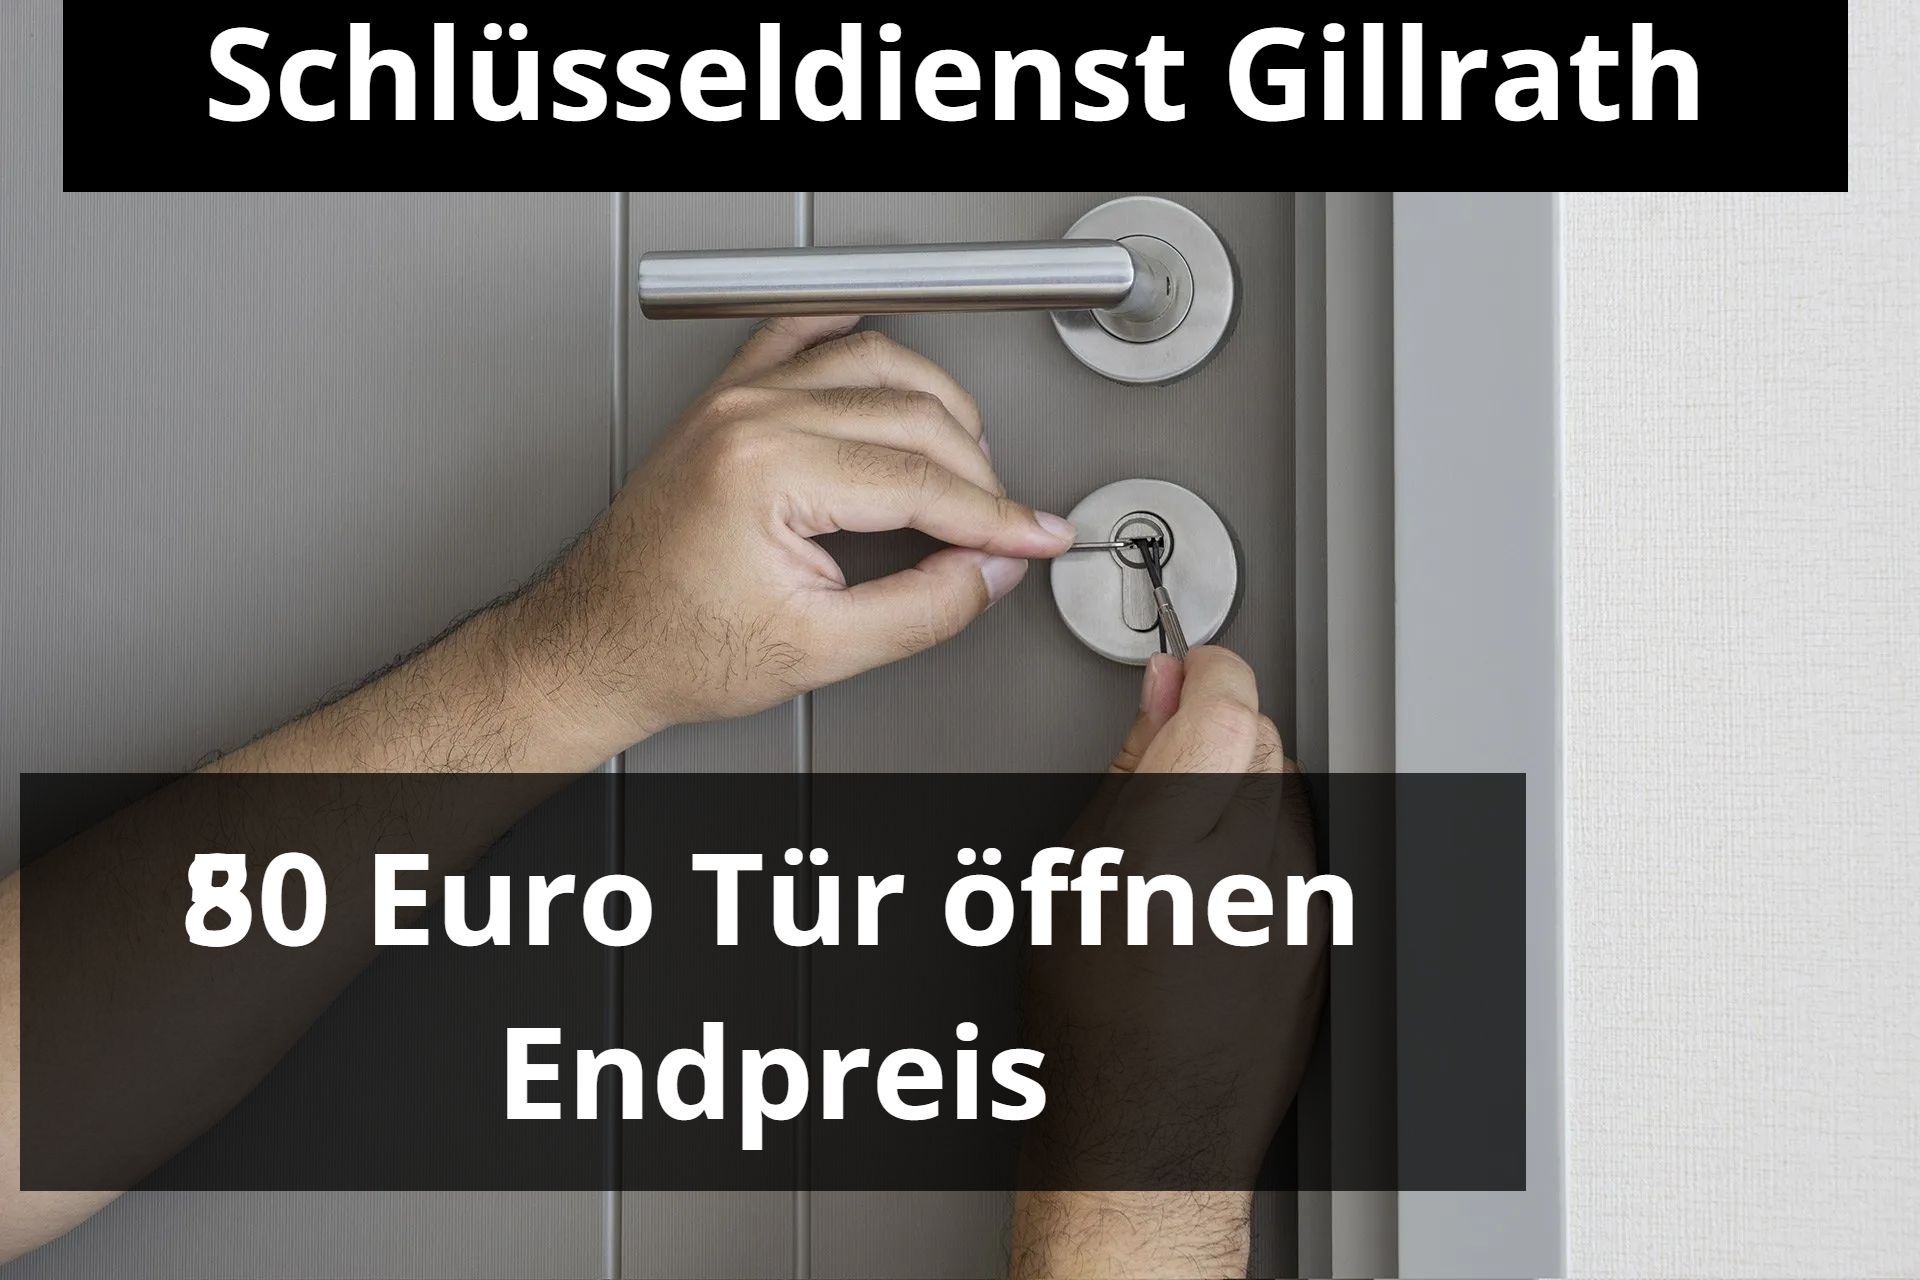 Schlüsseldienst Gillrath - Notdienst Tag und Nacht - Tür Öffnen zum 80 Euro Festpreis. Anfahrt Gratis